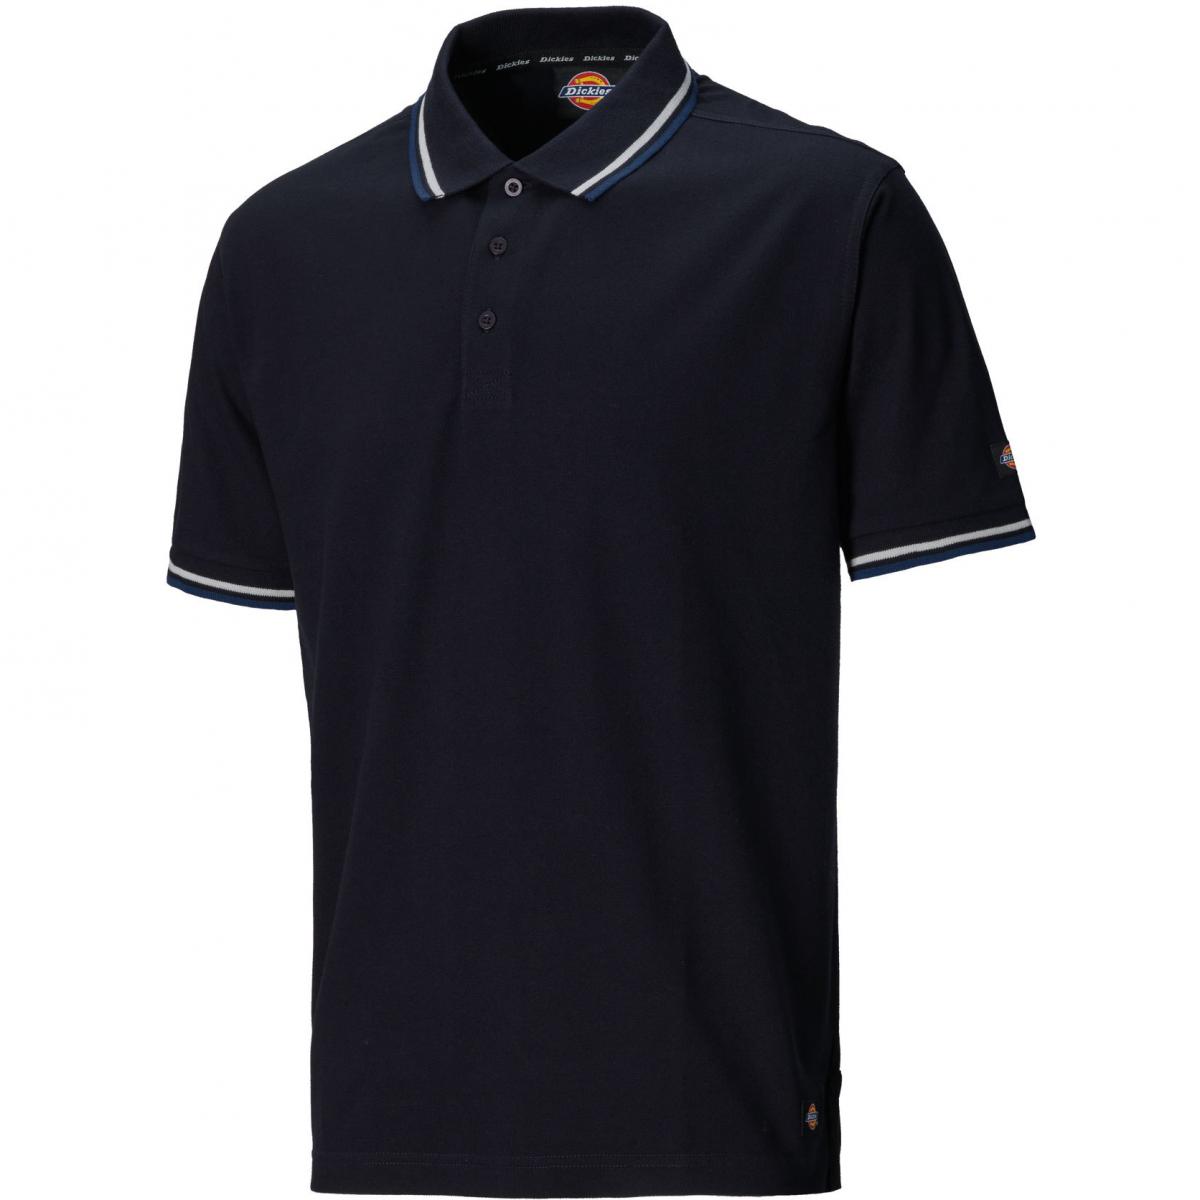 Hersteller: Dickies Herstellernummer: SH2001 Artikelbezeichnung: Polo-Shirt Riverton Farbe: Marineblau